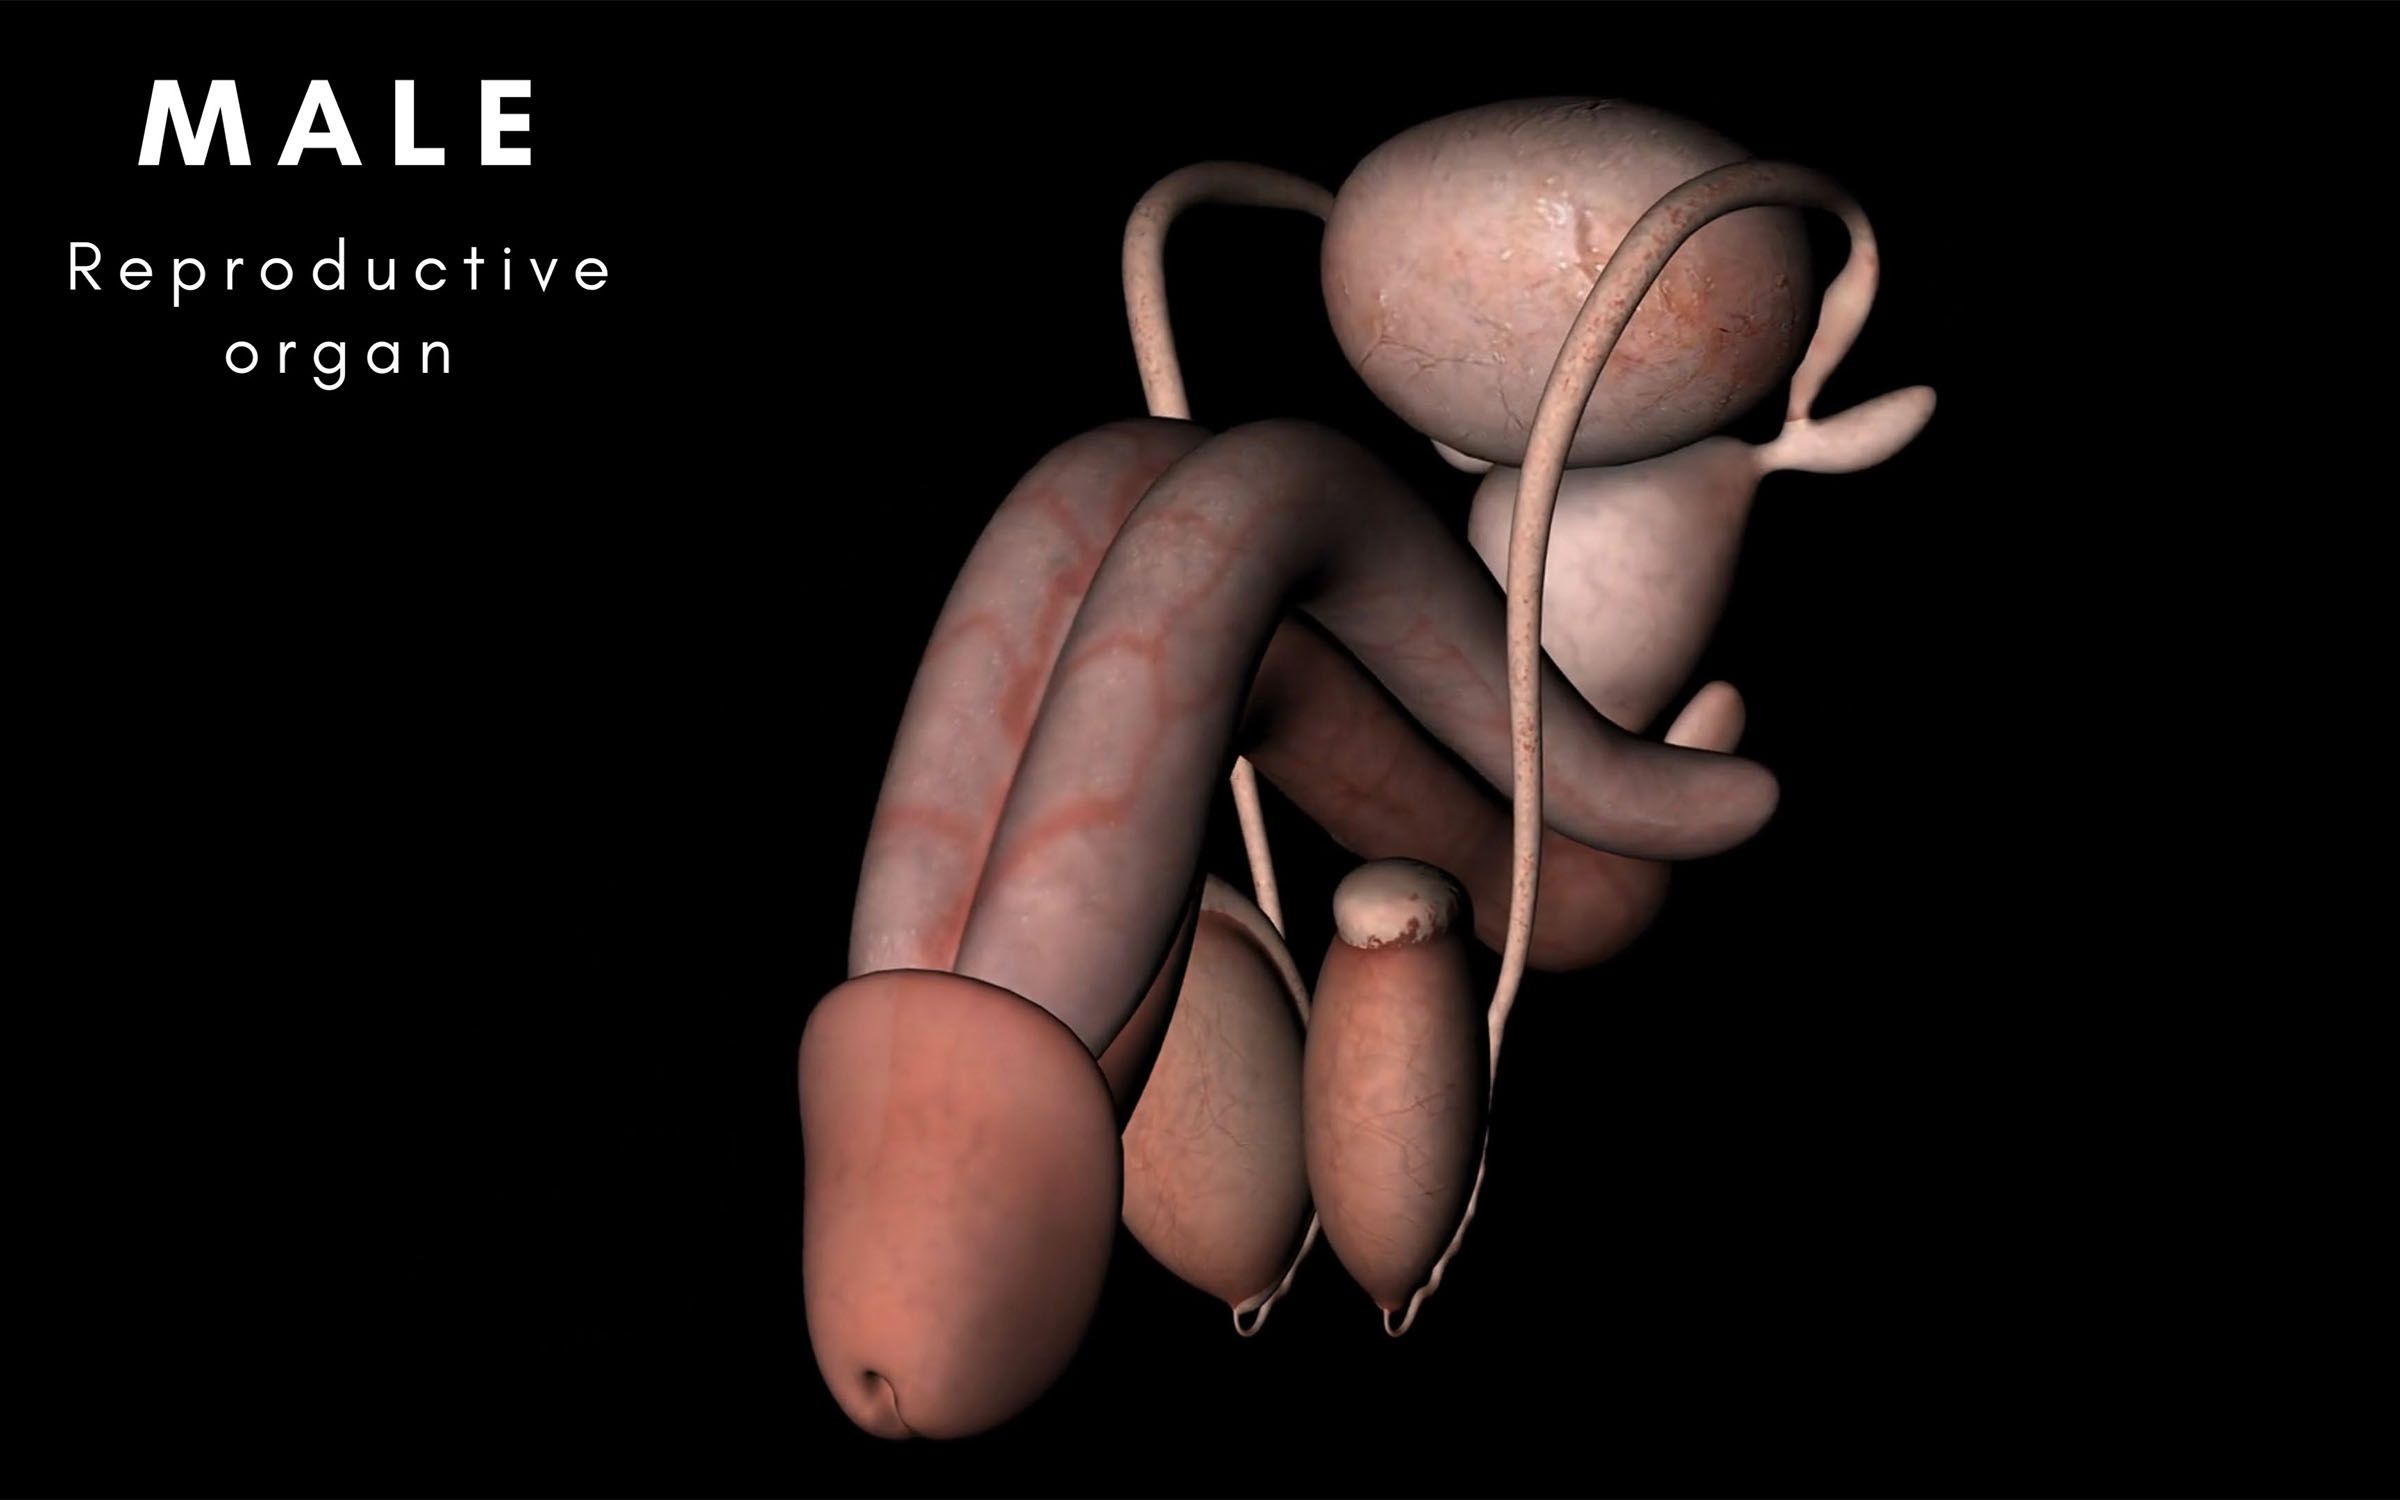 The human reproductive organ